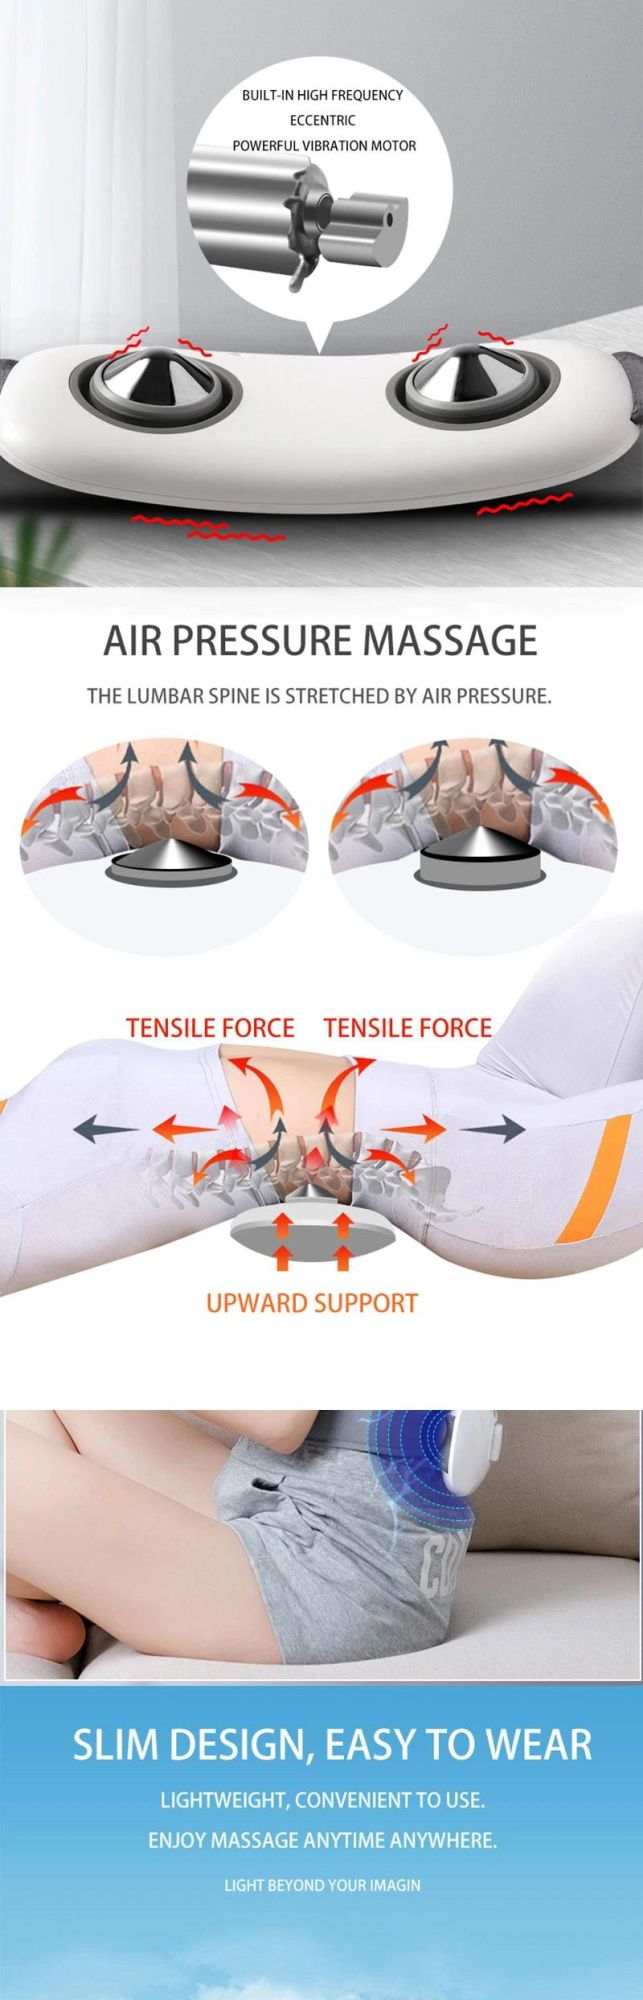 Hezheng Medical Fitness Equipment Lower Back Massage Machine Mini Rechargeable Waist Massager